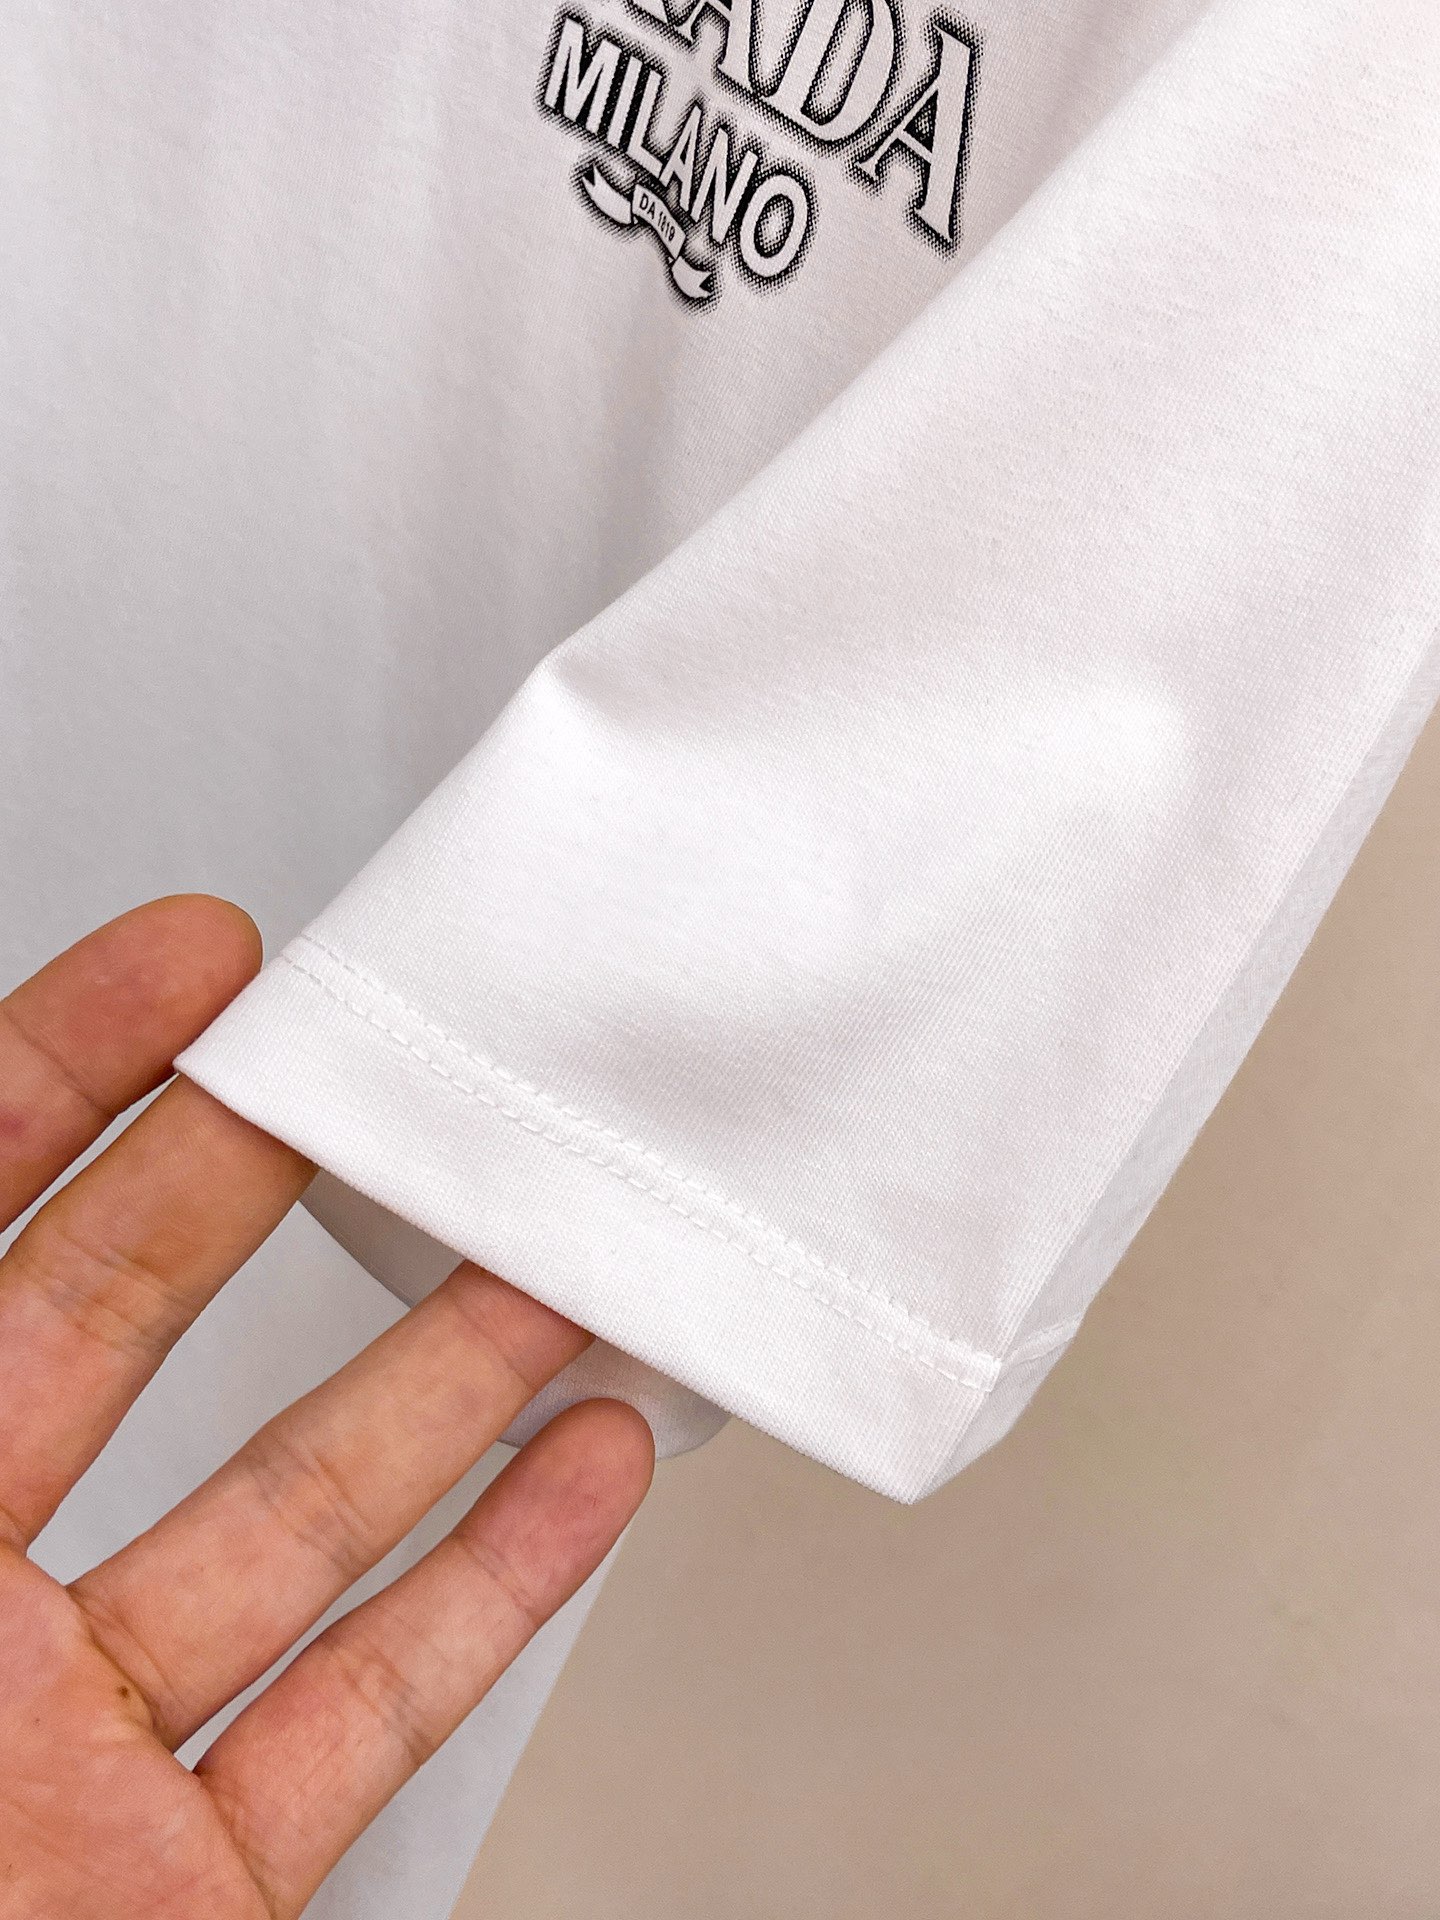 【激安】高級品通販 prada t シャツ メンズ激安通販 短袖 ゆったり 純綿 トップス プリント 夏服 ホワイト_8